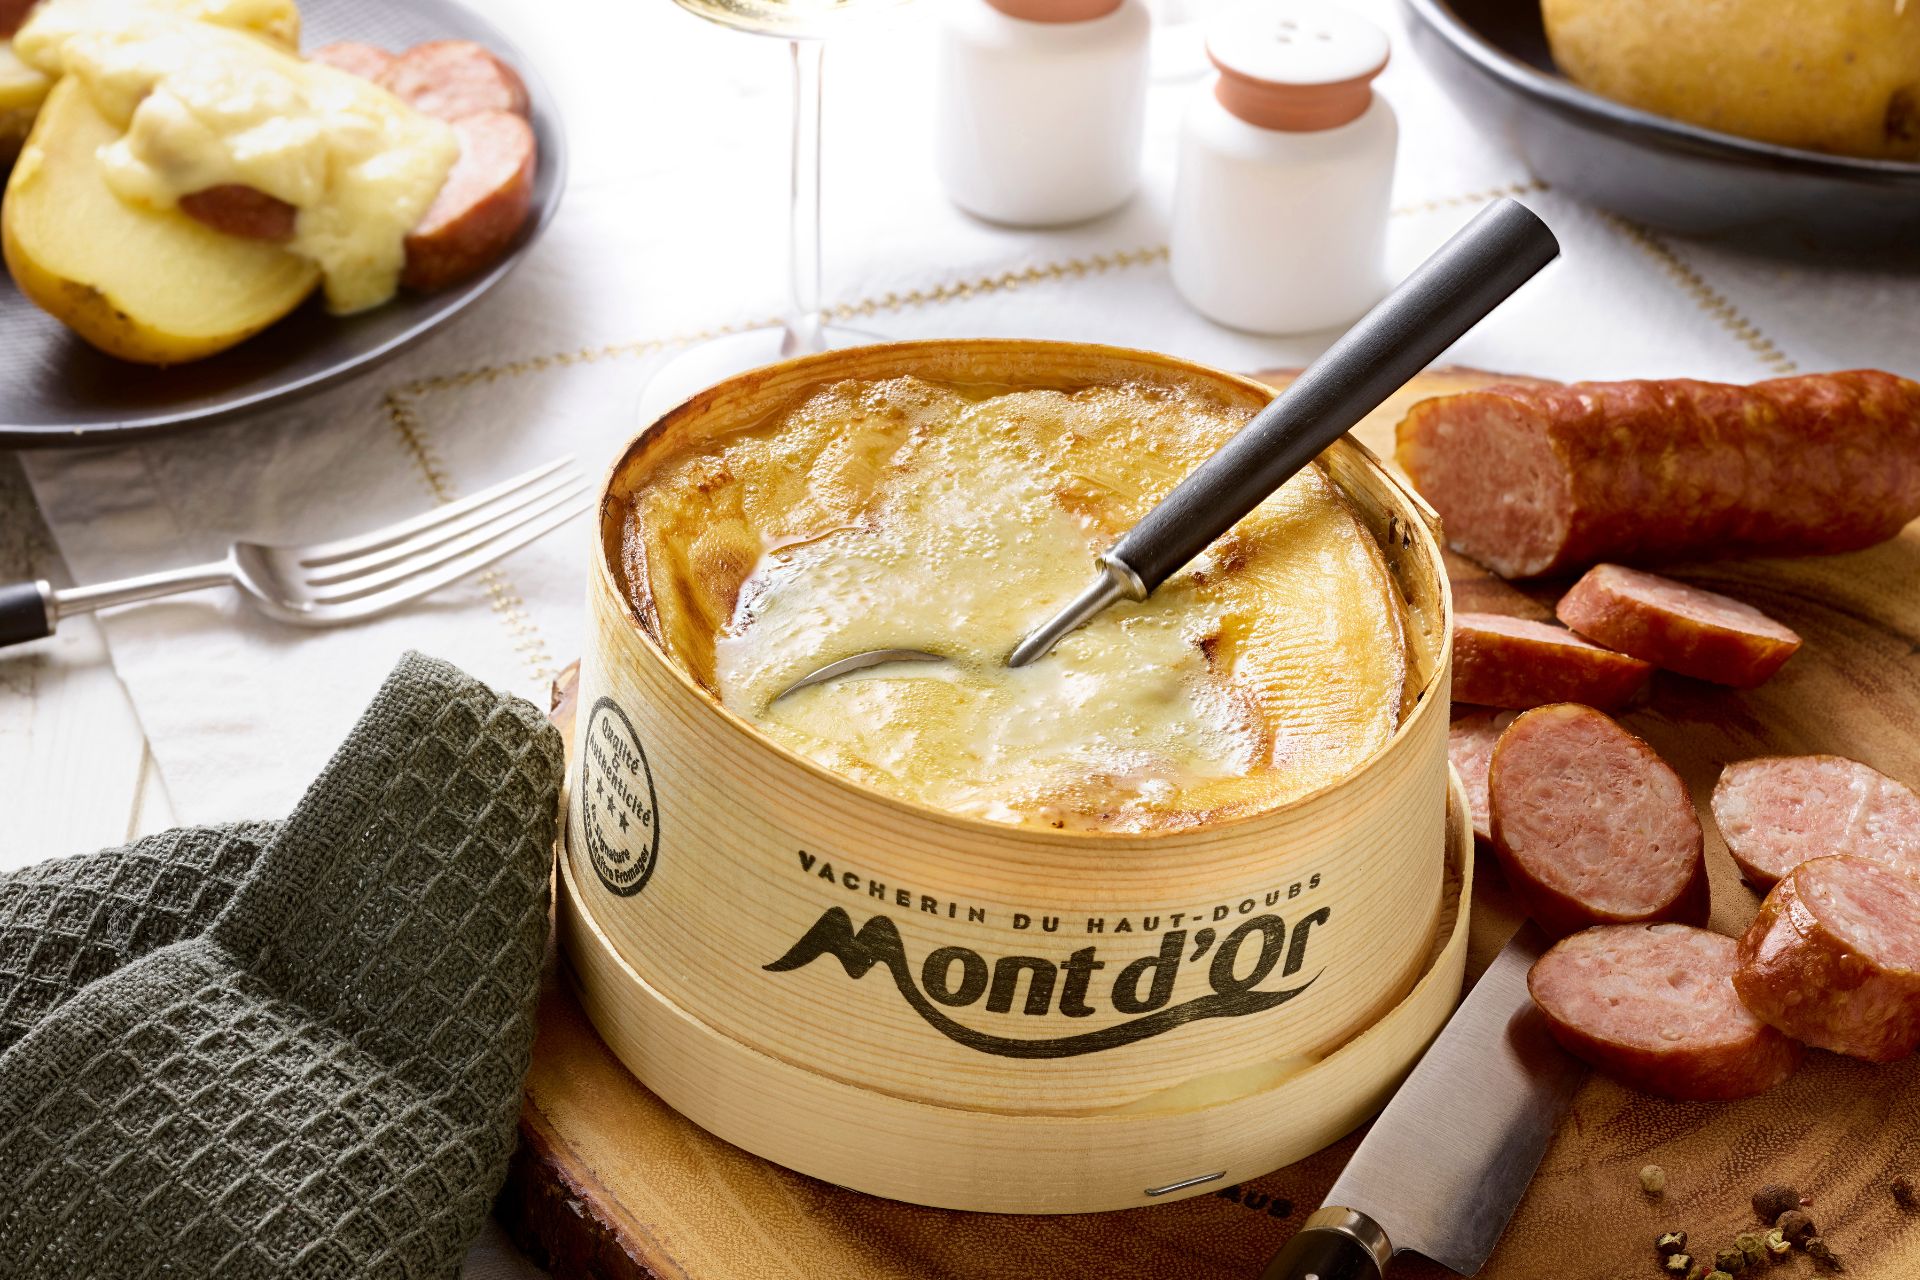 haut-doubs-fromage-syndicat-mont-dor-fromage-saisonnier-14283